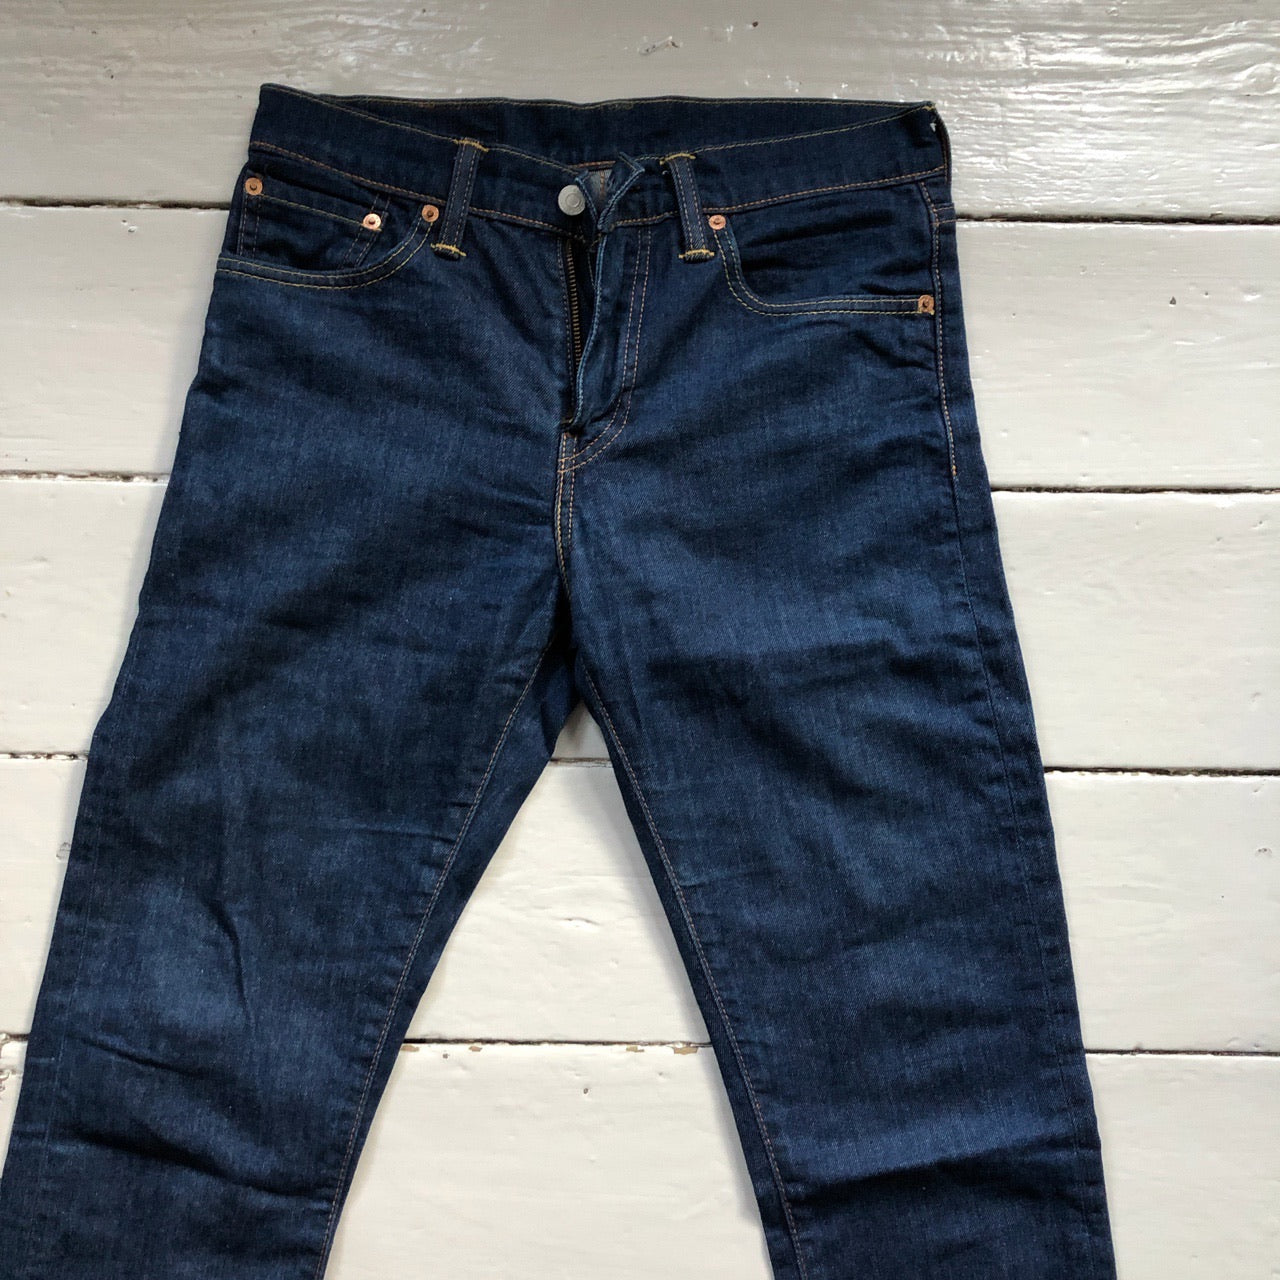 Levis 508 Slim Fit Navy Jeans (28/32)